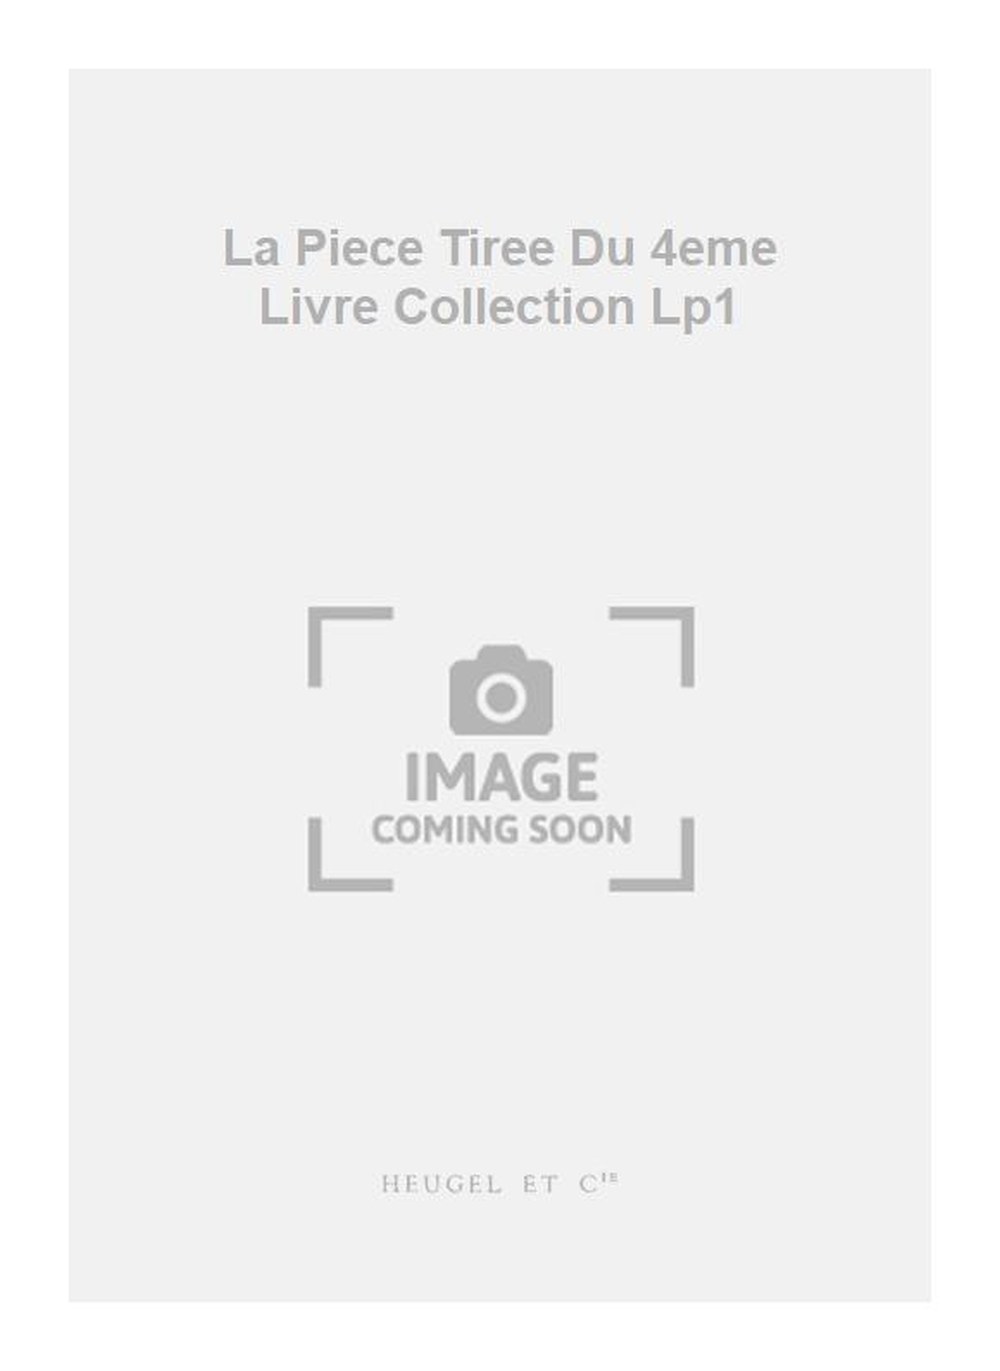 Jacques du Phly: La Piece Tiree Du 4eme Livre Collection Lp1